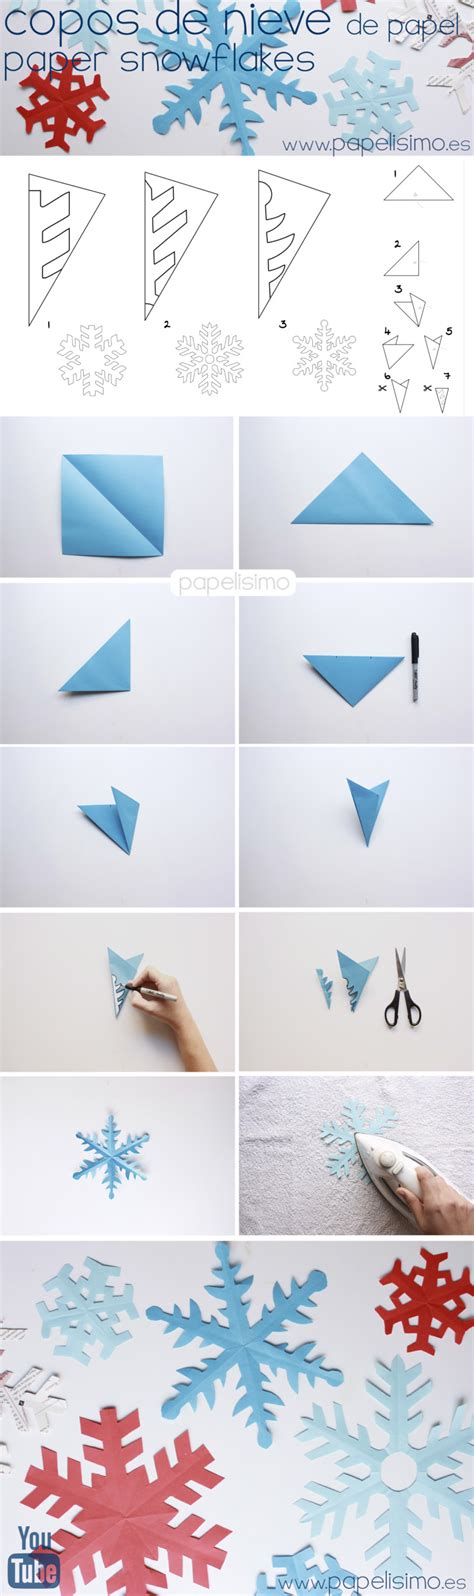 copos de nieve origami